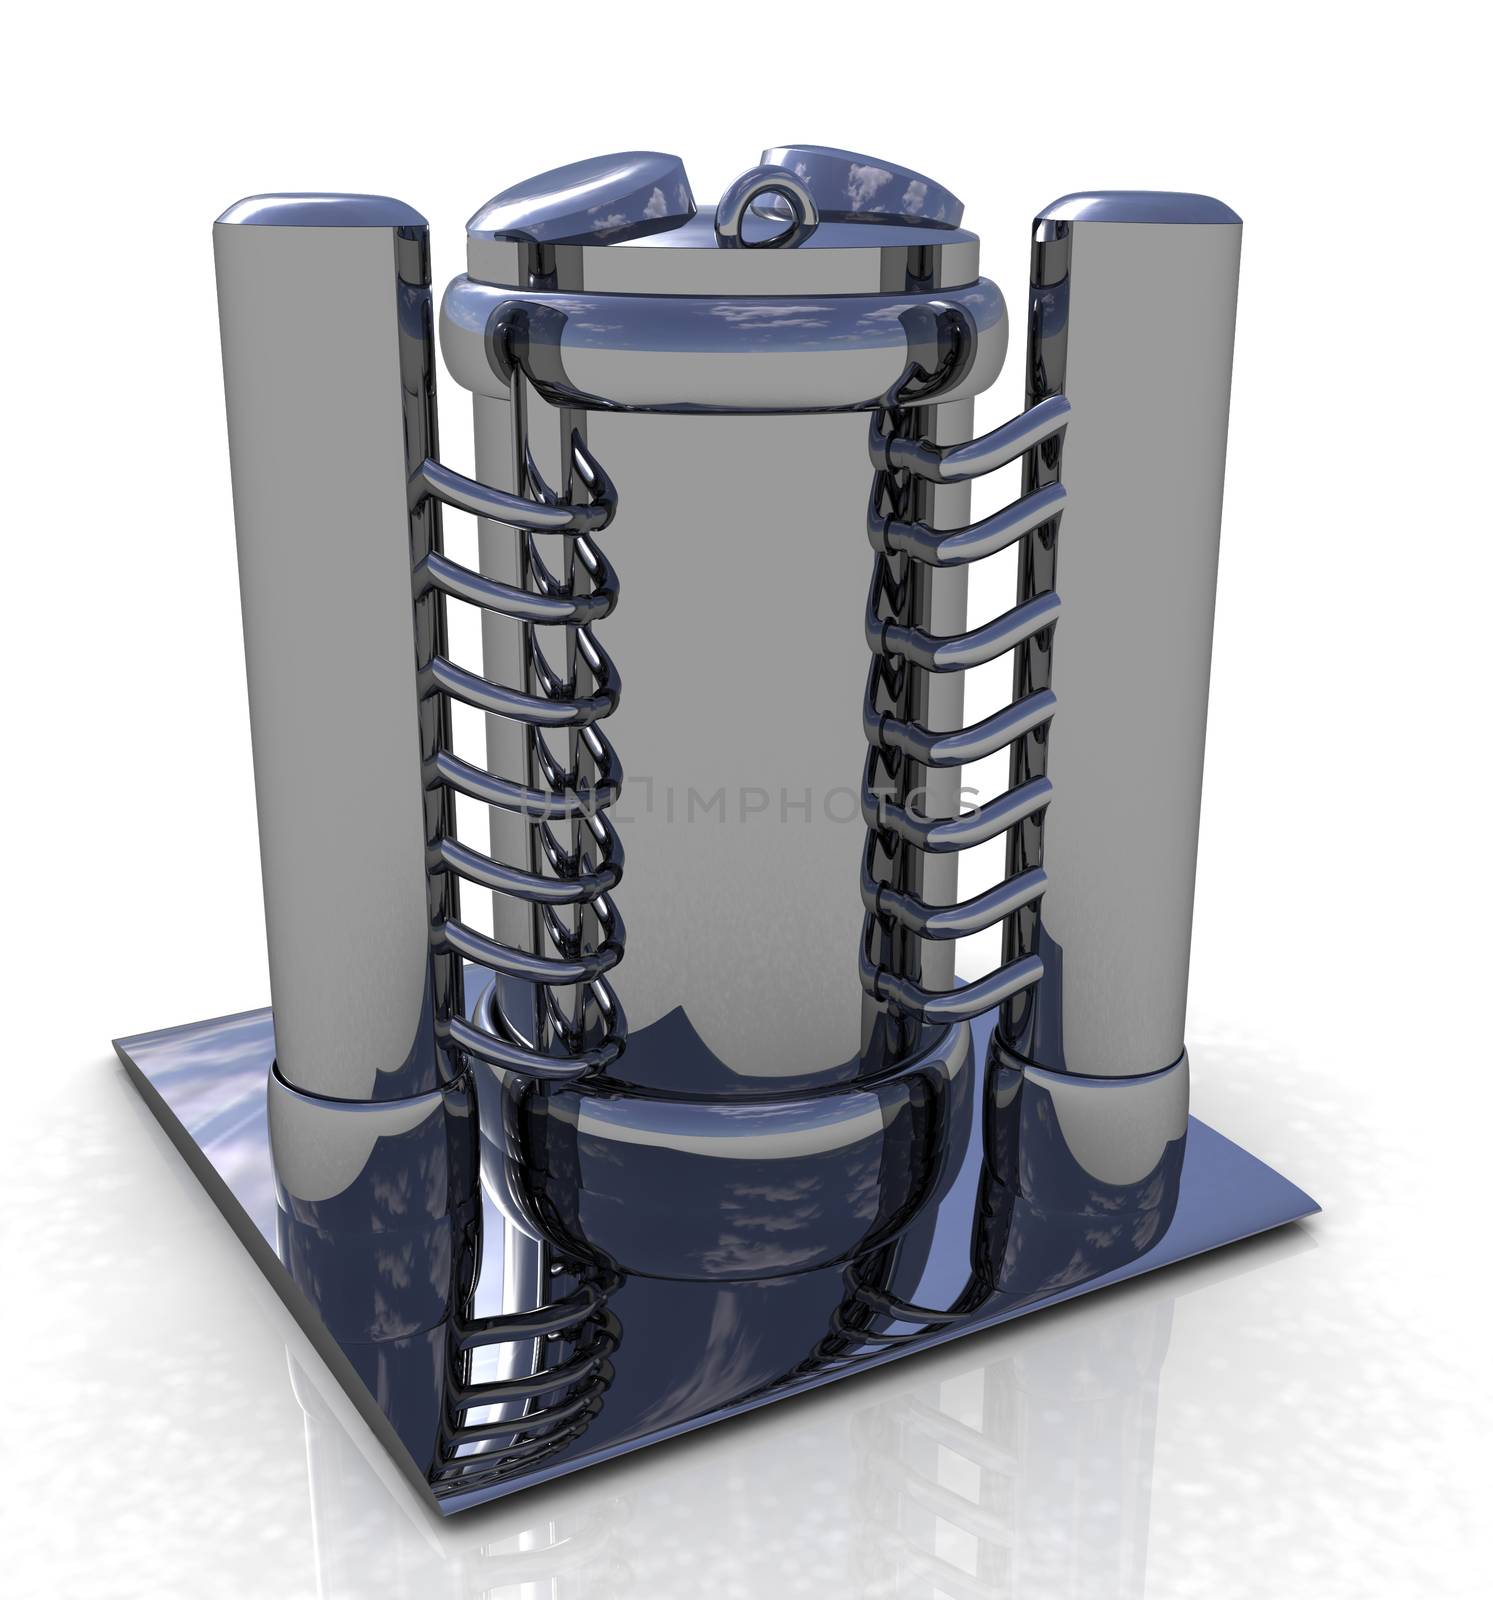 Abstract chrome metal pressure vessel by Guru3D